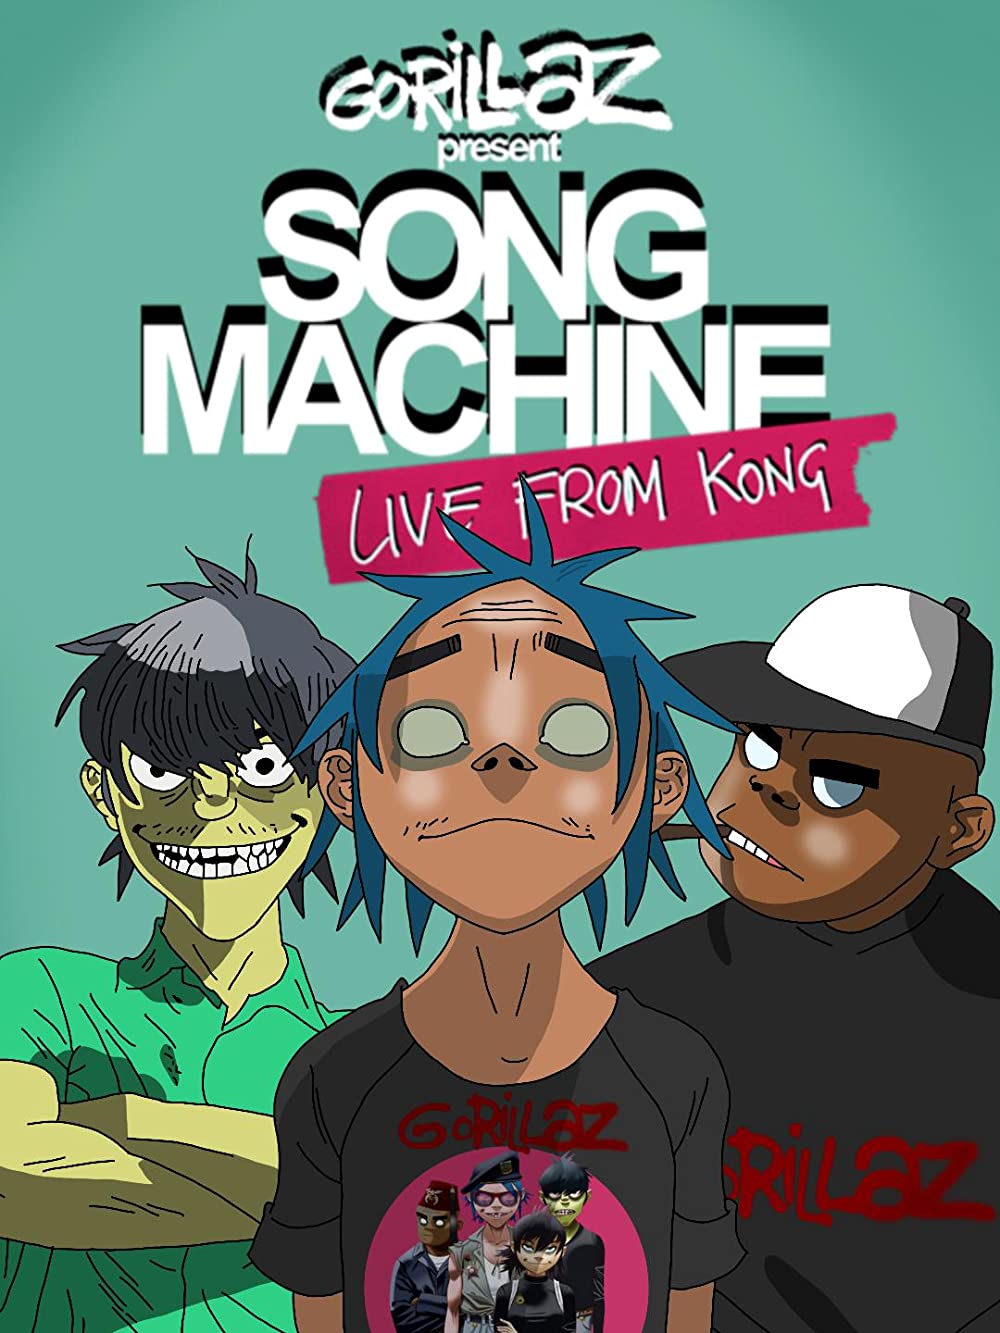 Filmbeschreibung zu Gorillaz: Song Machine Live from Kong